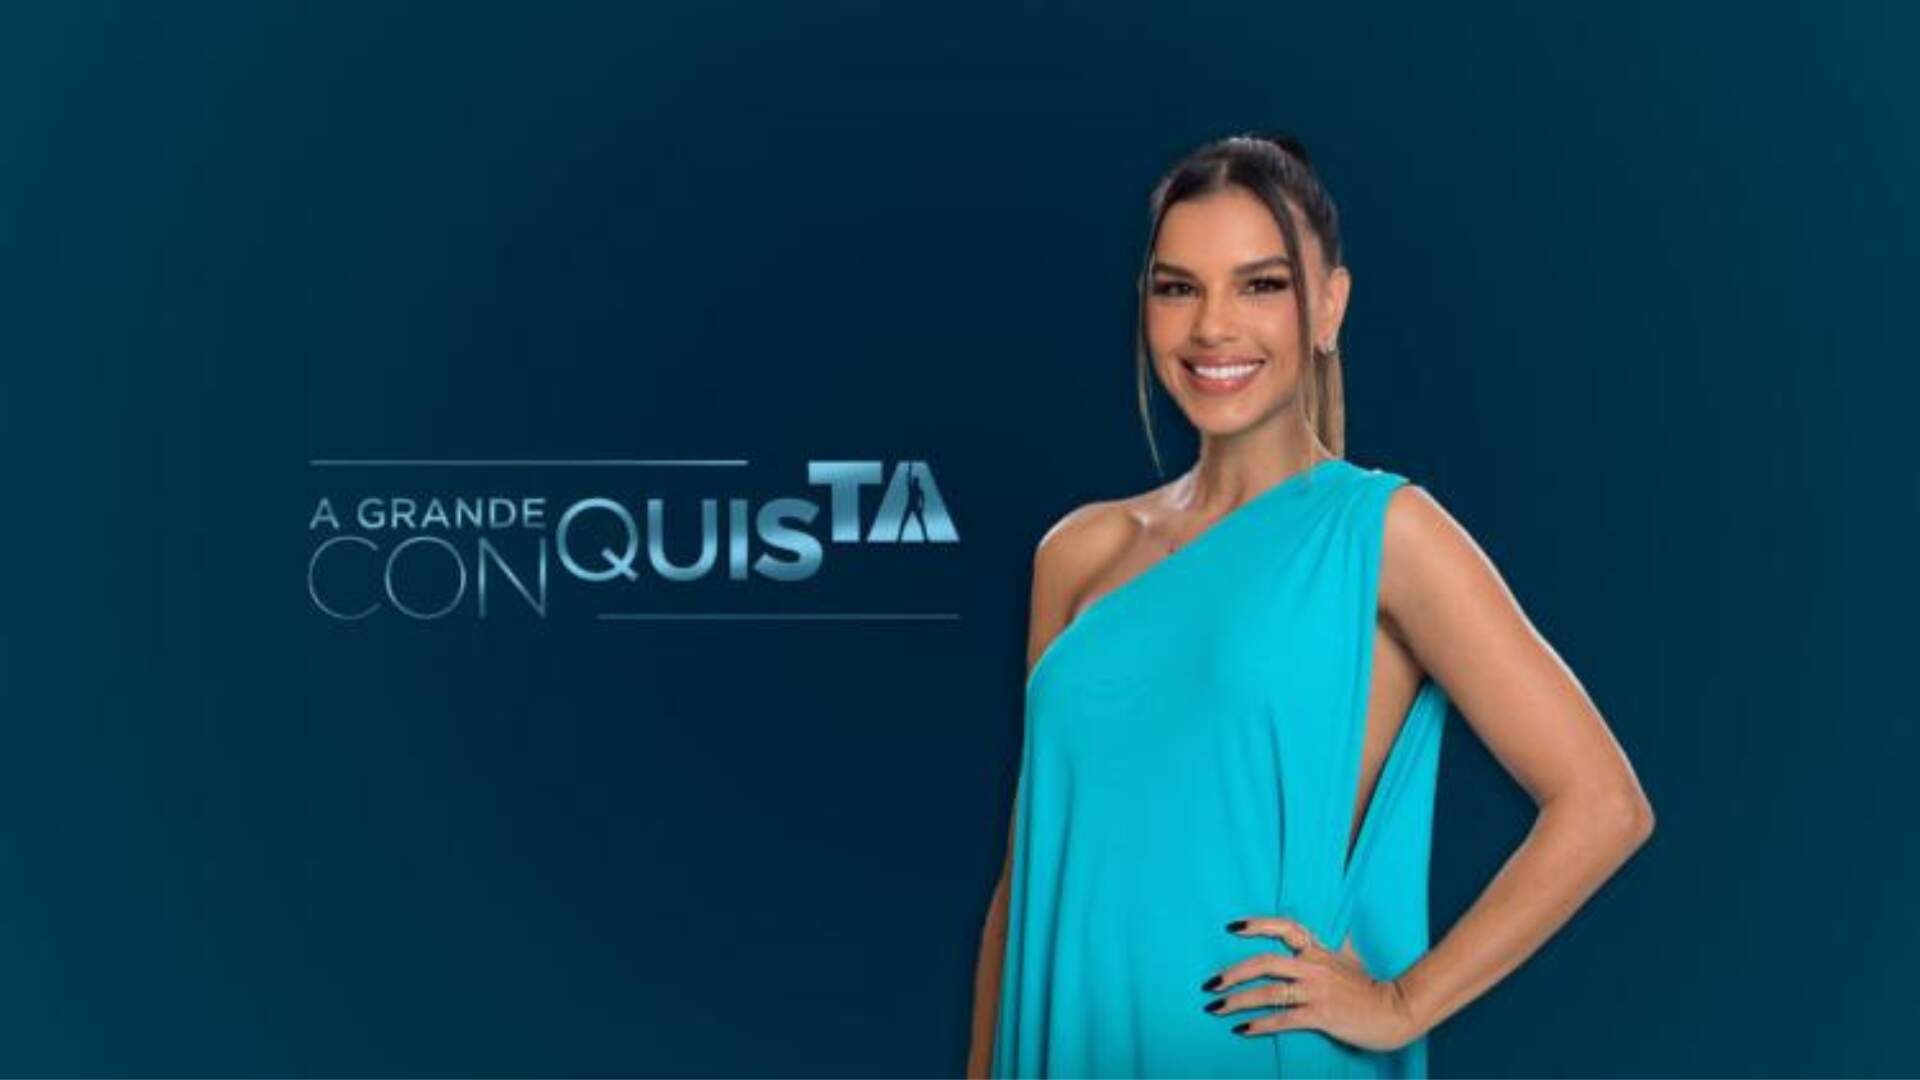 A Grande Conquista: Record divulga teaser do novo reality show e promete mudanças: “Primeiro” - Metropolitana FM